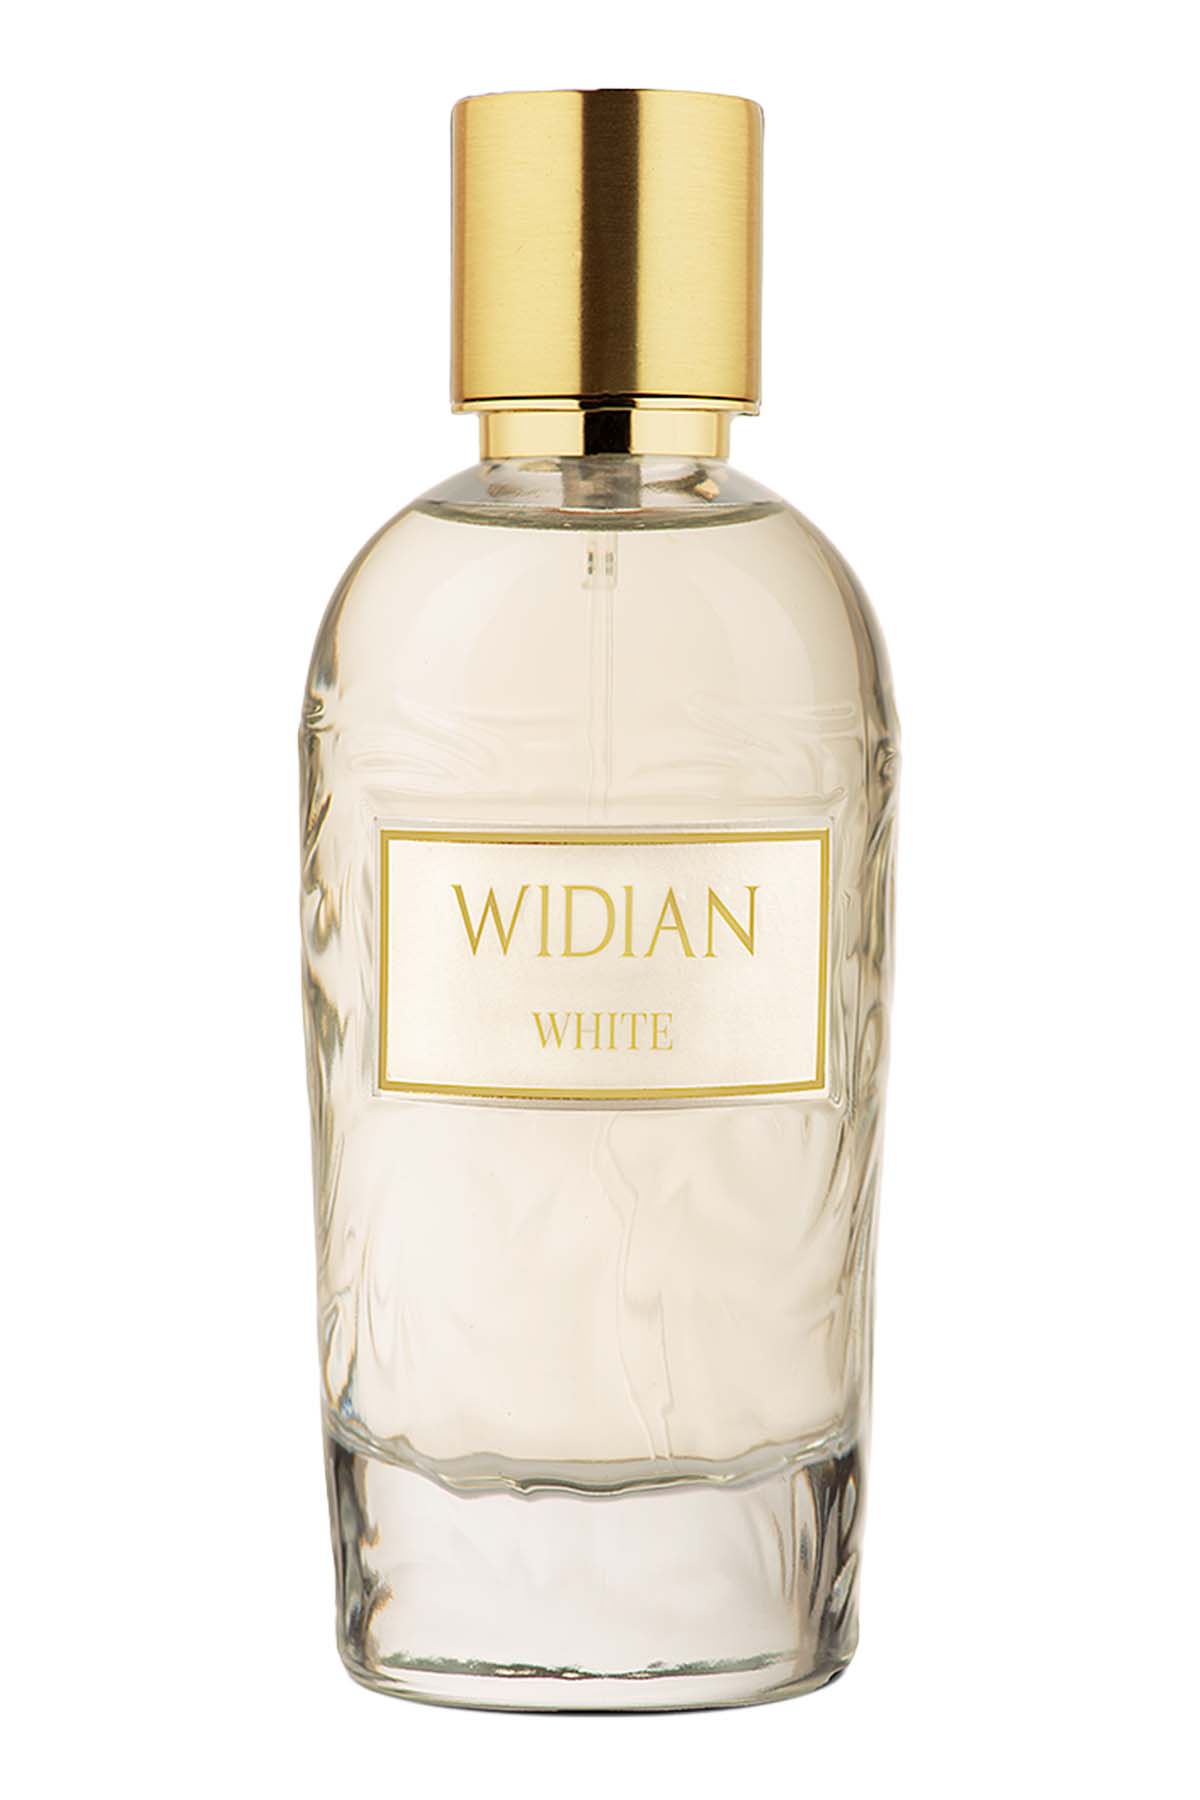 Widian Rose Arabia White Eau de Parfum